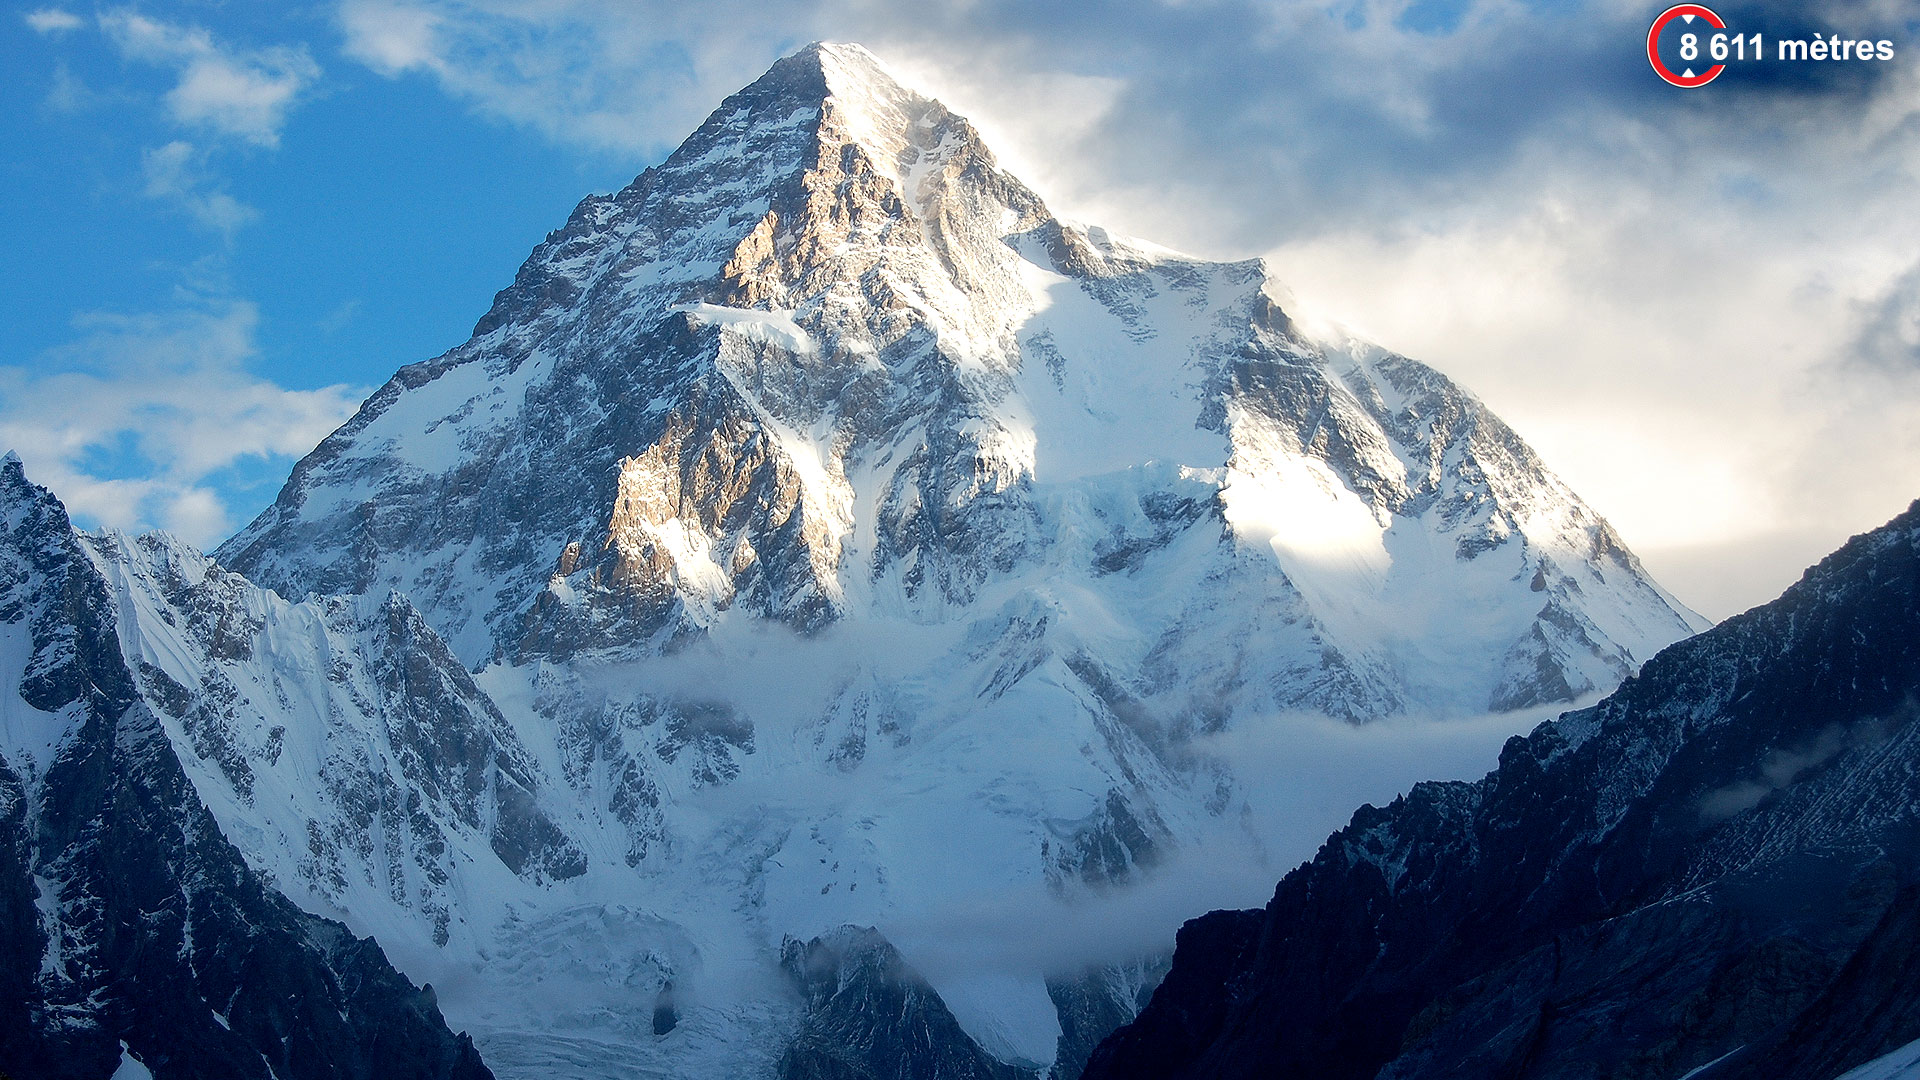 K2, la « montagne sans pitié ». Avec 8.611 mètres, le K2 est le deuxième plus haut sommet du monde, situé à la frontière entre la Chine et le Pakistan dans le massif du Karakoram. Pourtant, il est considéré comme beaucoup plus délicat à gravir et dangereux que l’Everest. Seulement un peu plus de 300 alpinistes sont parvenus au sommet et 81 personnes y ont péri. À ce jour, aucune ascension n’a été entreprise en hiver au vu des conditions extrêmes.© Maria Ly CC by 2.0Pour des ascensions de ce type, mieux vaut être très bien équipé. K2 est aussi une marque de ski et produits de montagne !&nbsp;